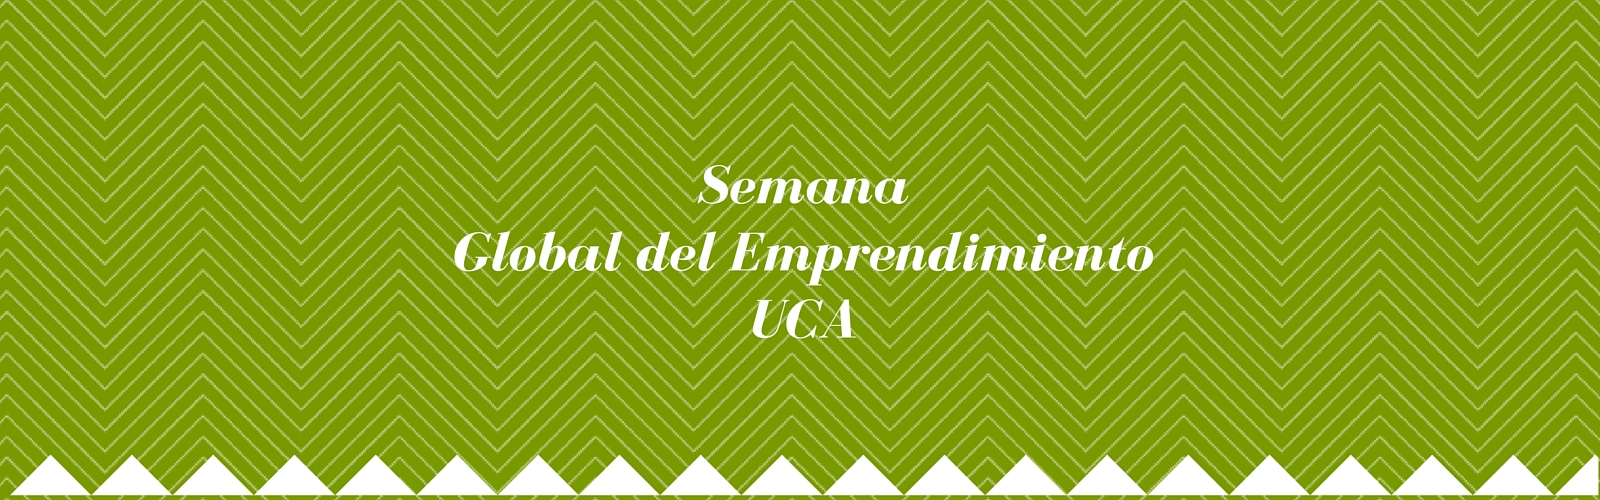 Semana Global del Emprendimiento en la Universidad de Cádiz